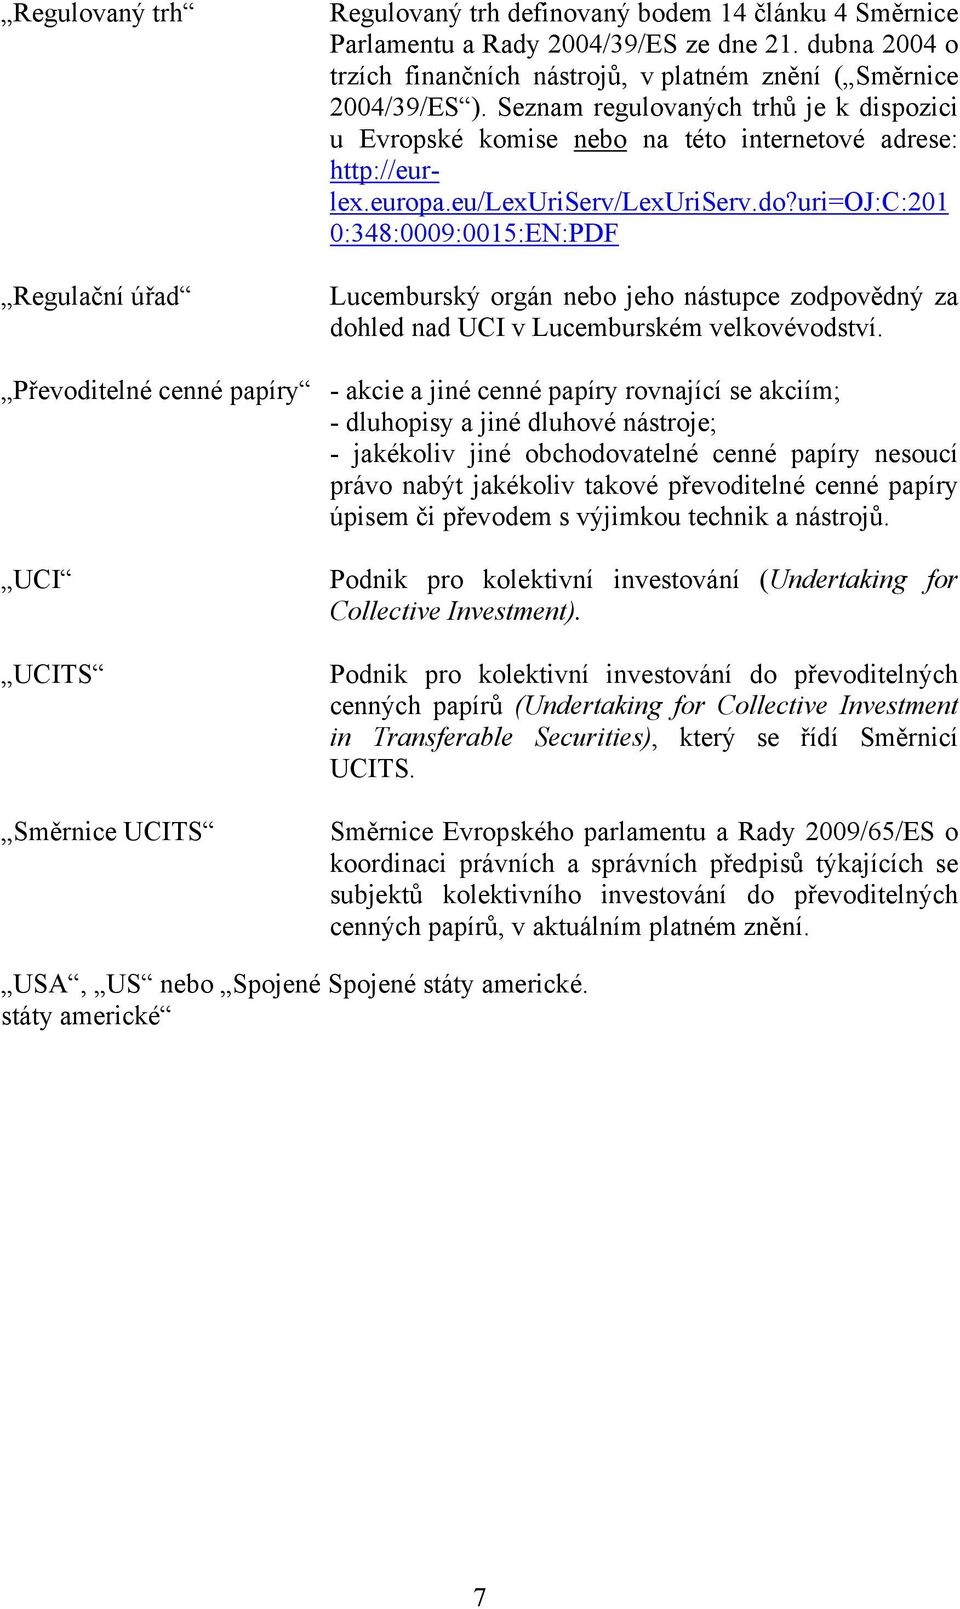 eu/lexuriserv/lexuriserv.do?uri=oj:c:201 0:348:0009:0015:EN:PDF Lucemburský orgán nebo jeho nástupce zodpovědný za dohled nad UCI v Lucemburském velkovévodství.